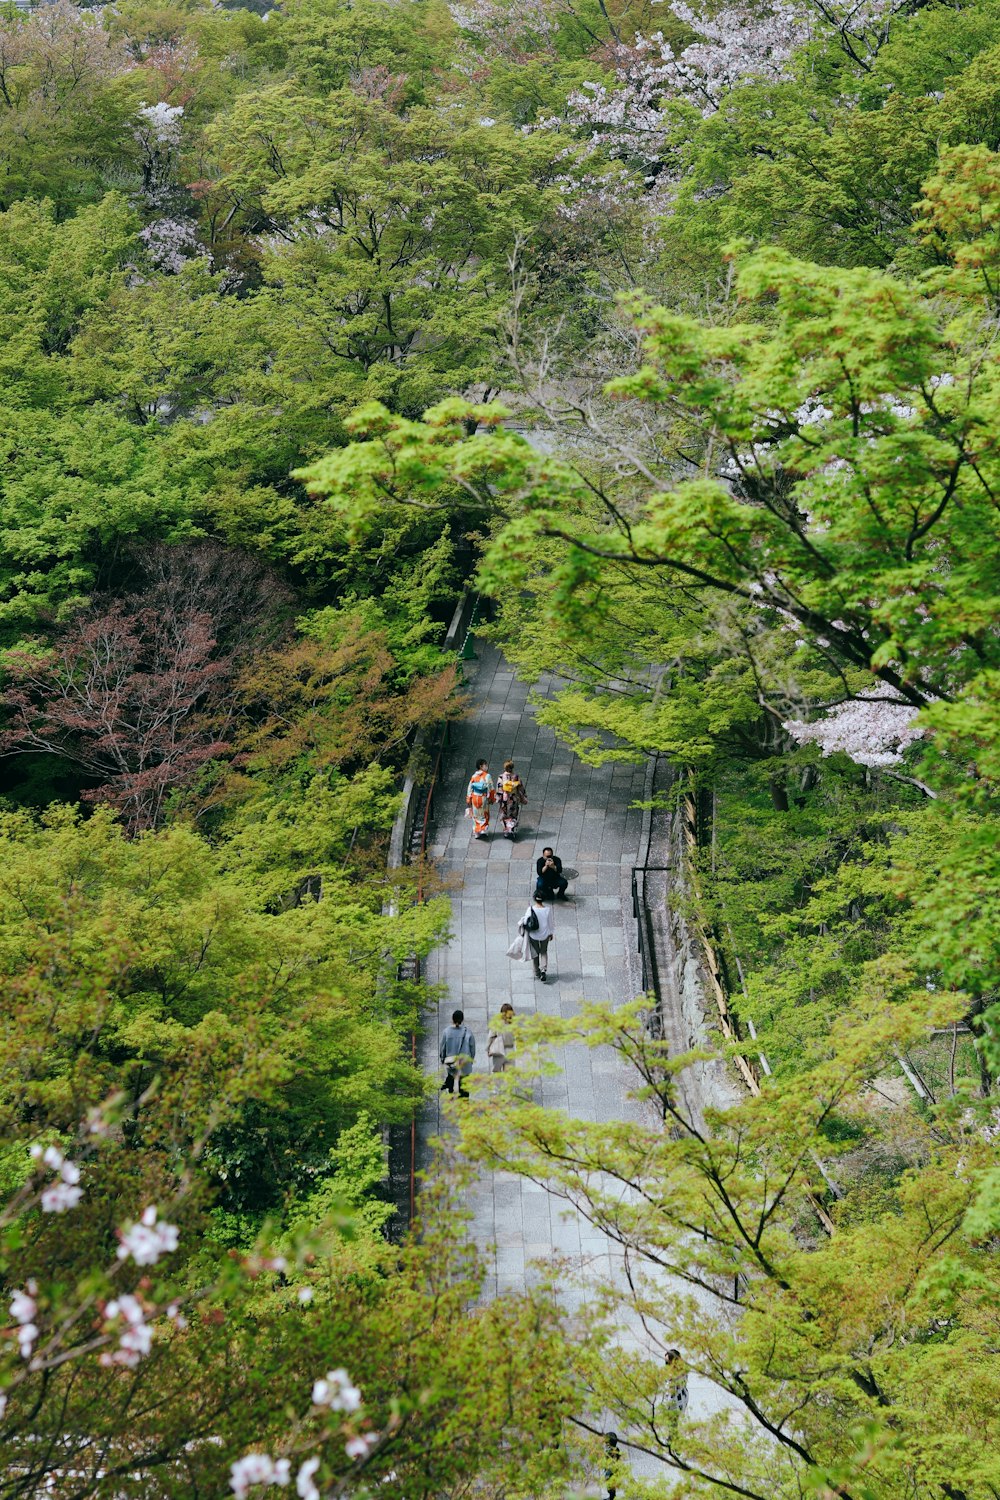 persone che camminano sul ponte tra gli alberi verdi durante il giorno